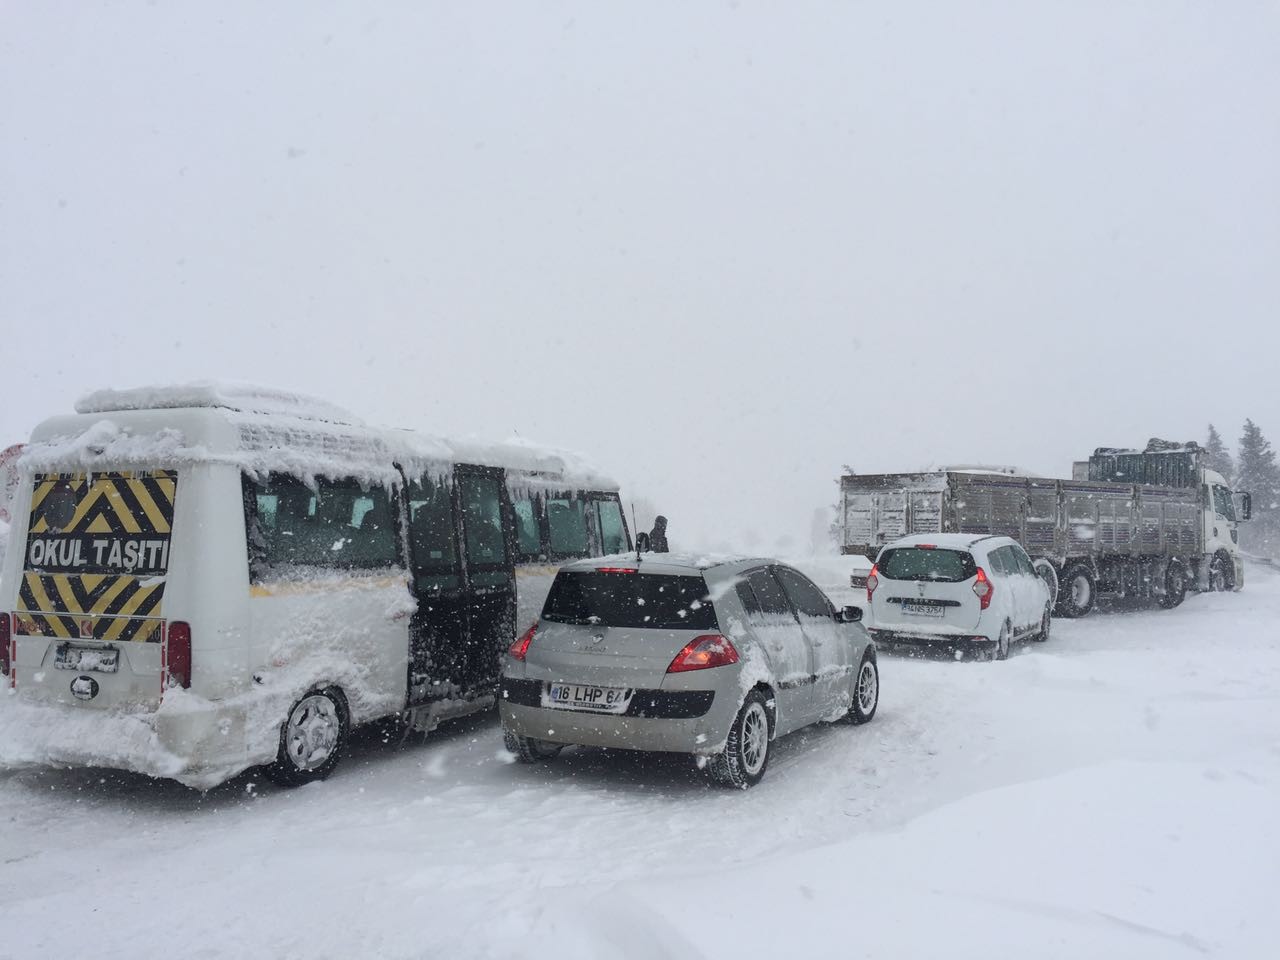 Yoğun kar yağışı ülkenin çoğu kesiminde ulaşımda olumsuzluğa yol açıyor. Bolu Ankara karayolunda kar nedeniyle ulaşım 1 saat durdu. Karayolları aracı kara saplanırken, uzun araç kuyrukları oluştu. Bursa-İzmir yolu ise 4.5 saattir kapalı durumda ve araç konvoyu 40 kilometreye ulaştı.